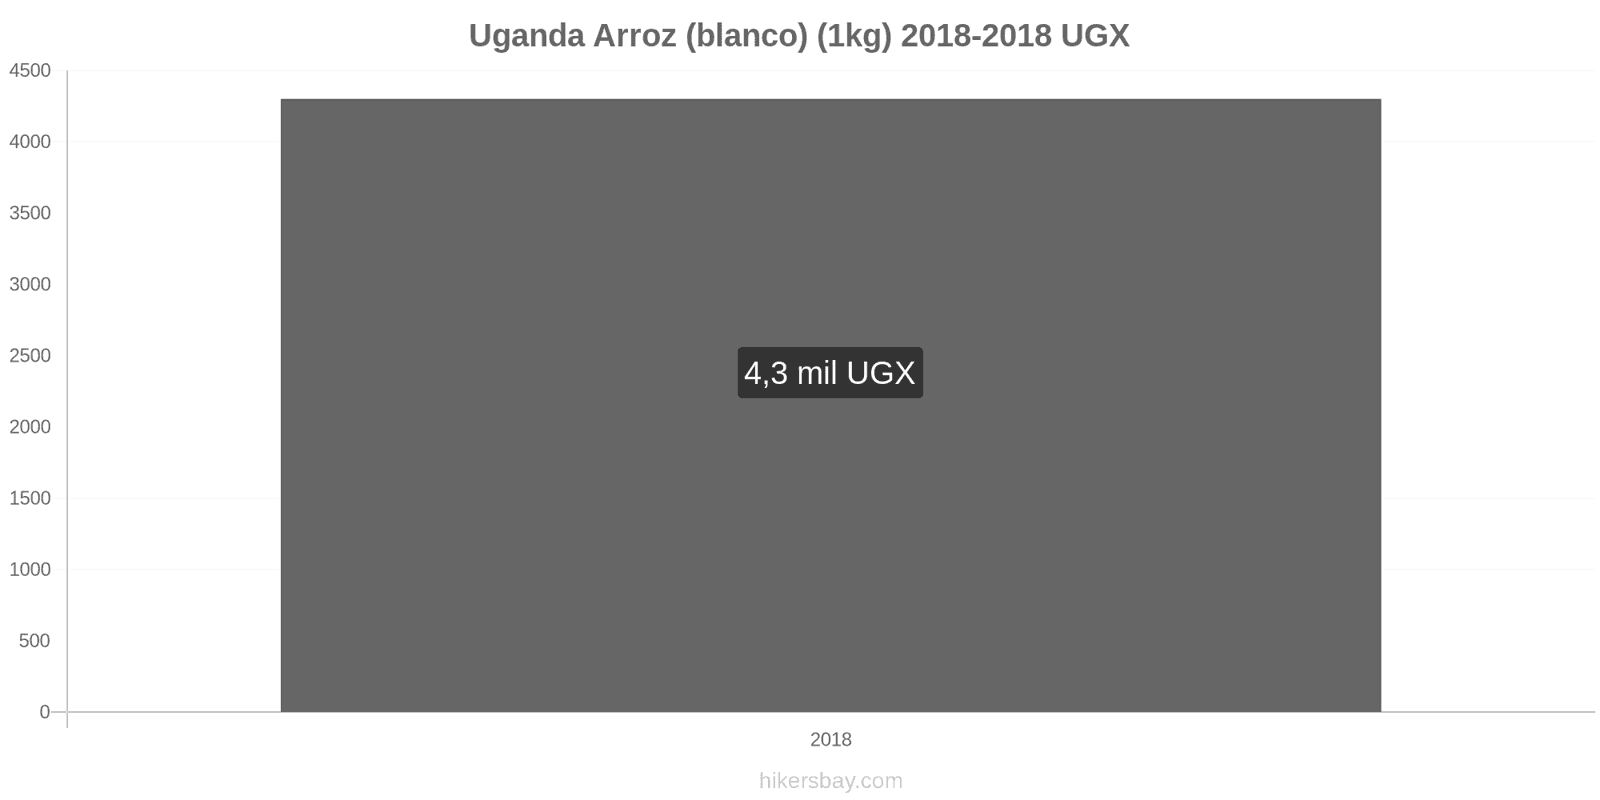 Uganda cambios de precios Kilo de arroz blanco hikersbay.com